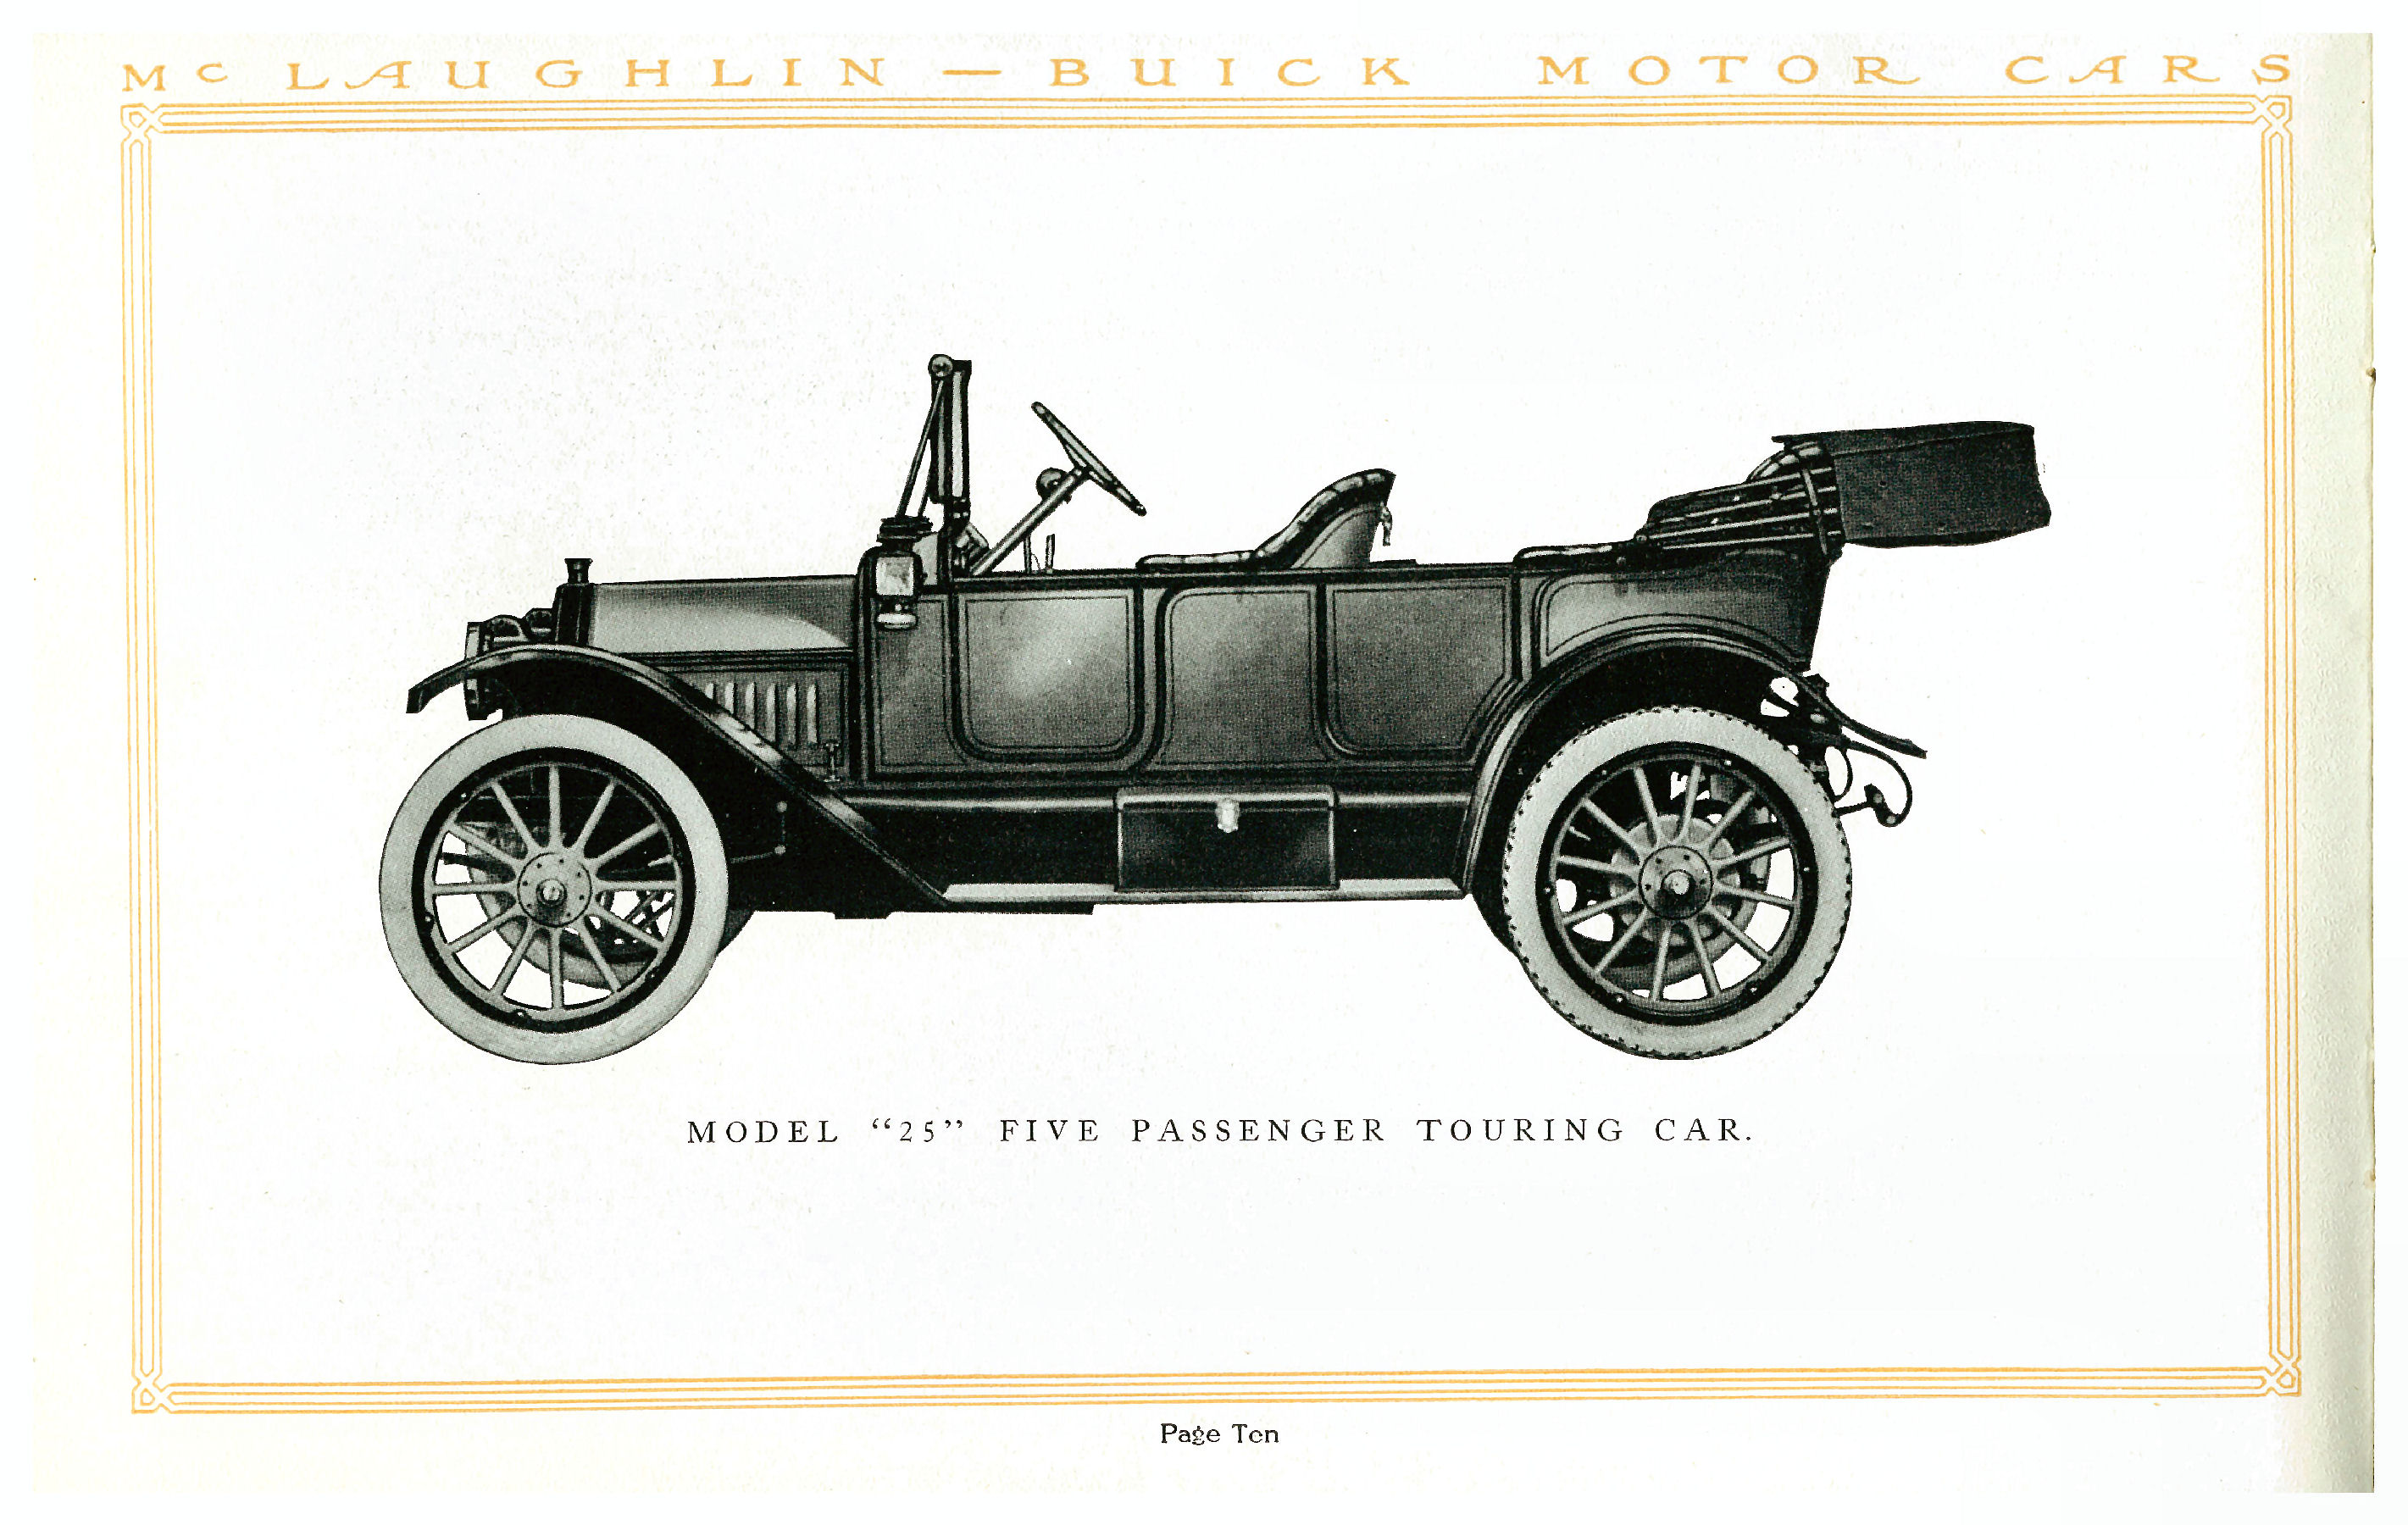 1914 McLaughlin Buick Motor Cars-10